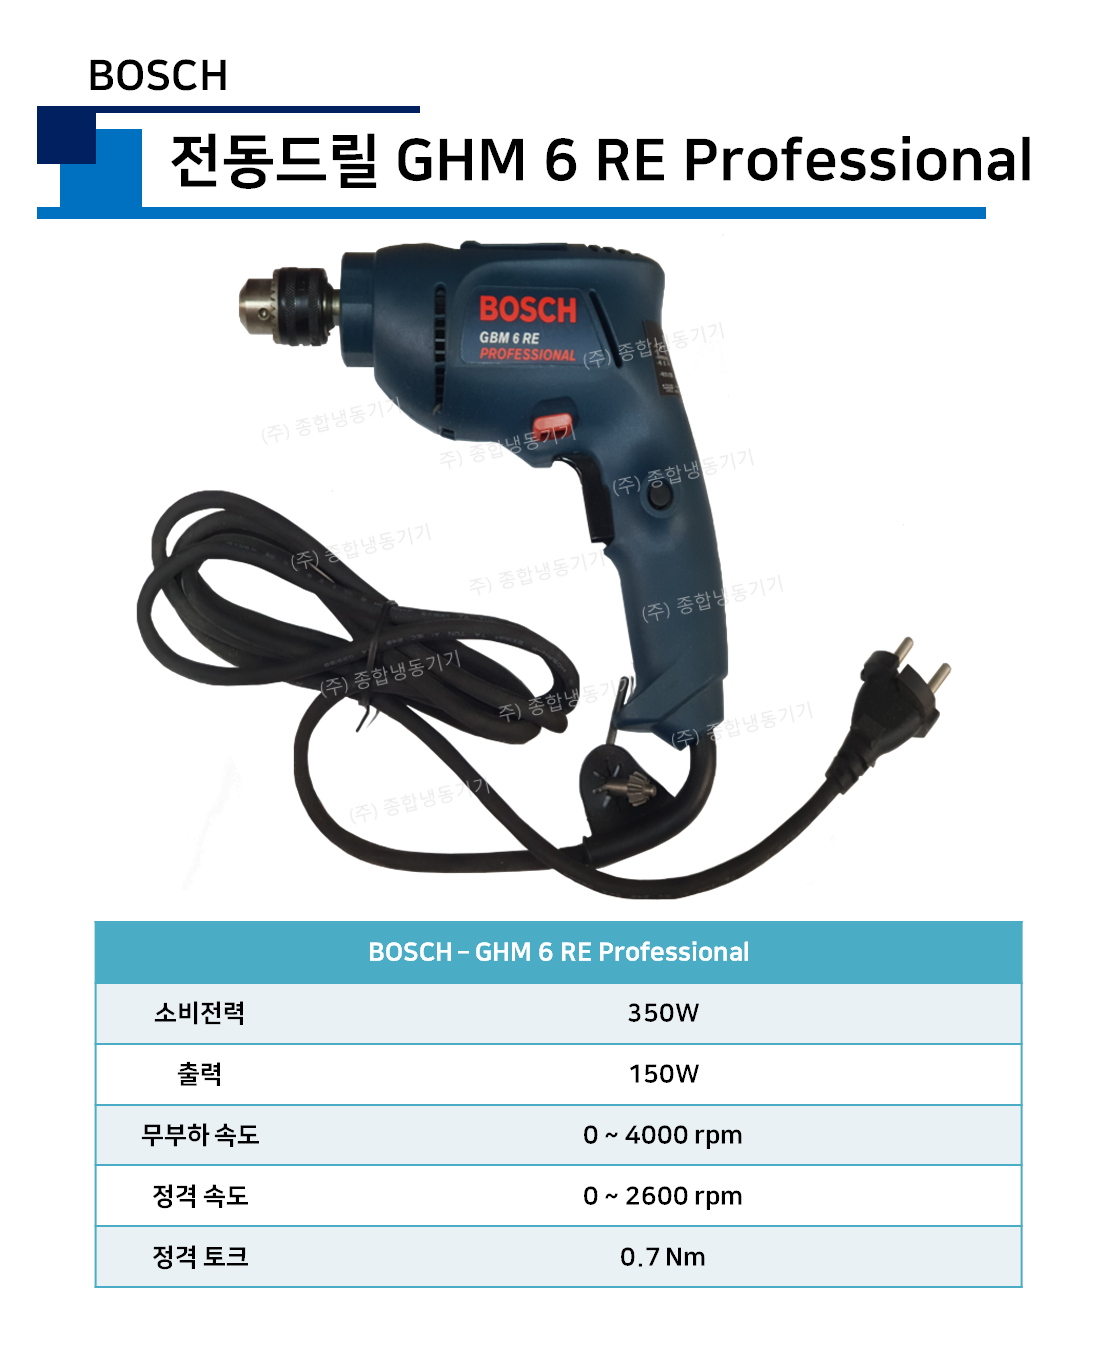 보쉬 - 전동드릴 GHM 6 RE Professional (BOSCH)